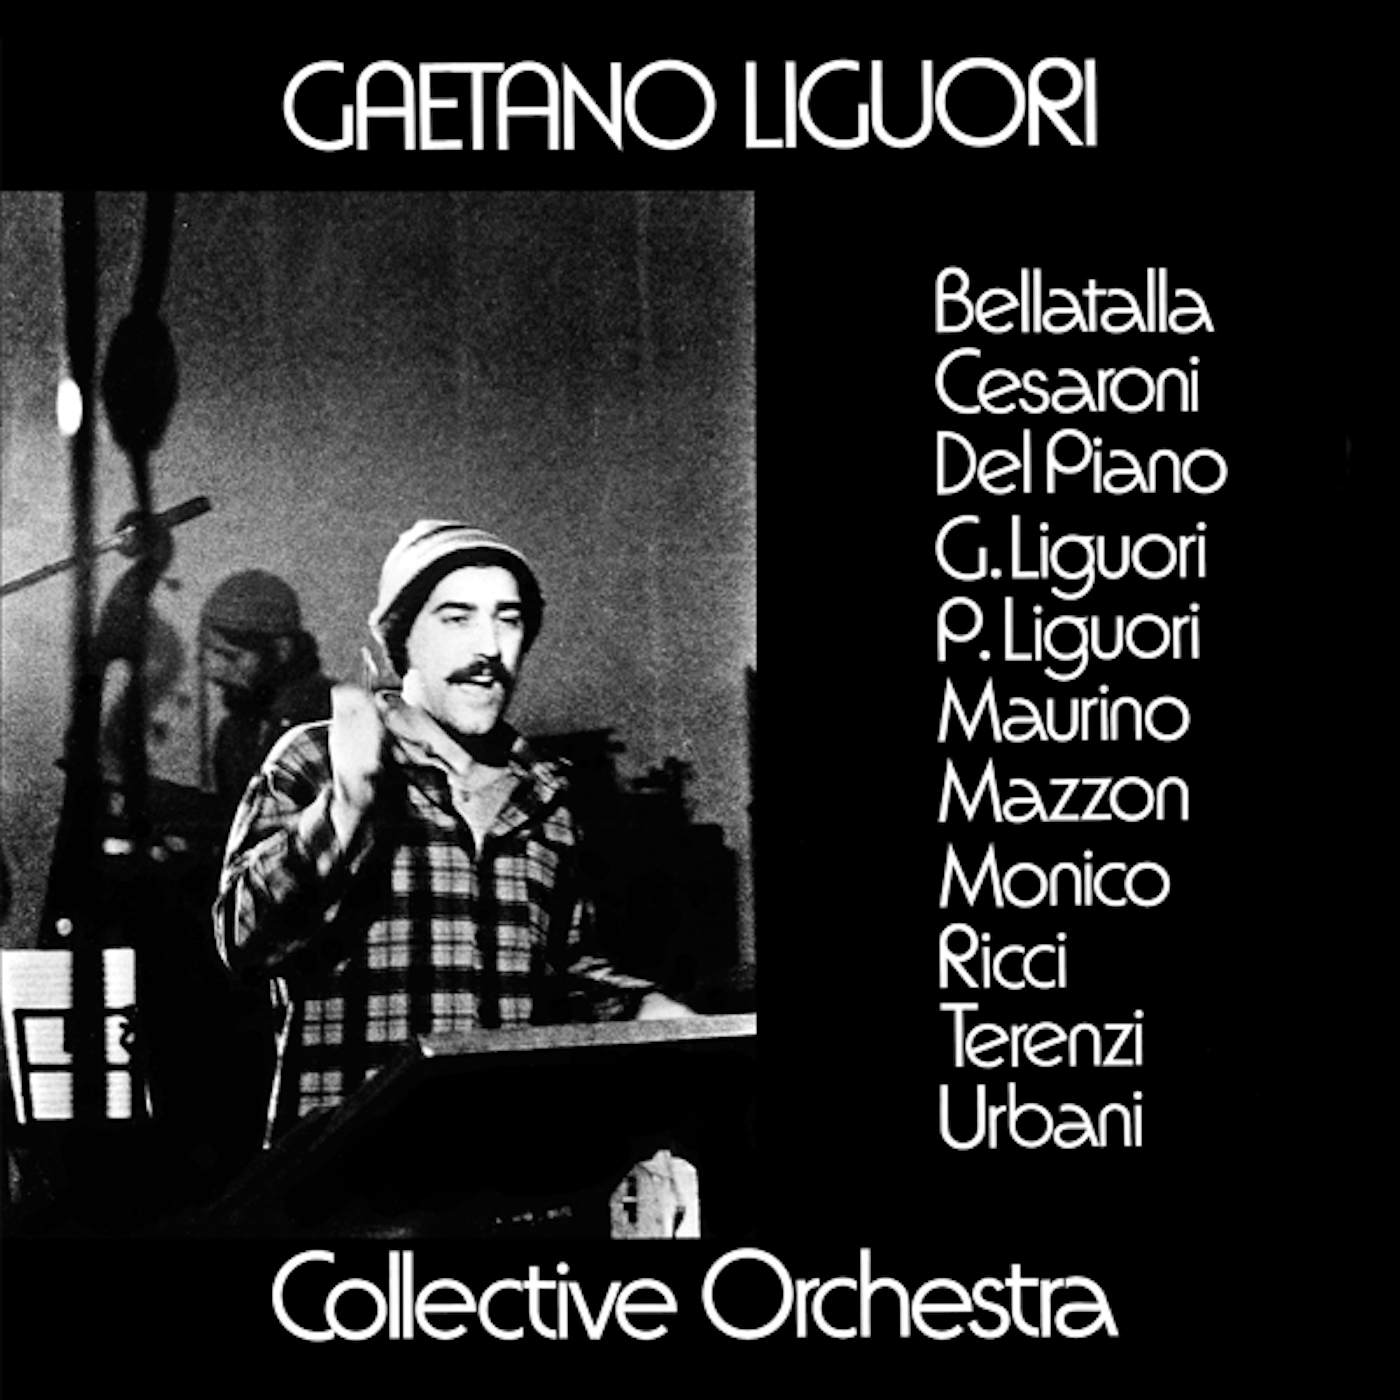 Gaetano Collective Orchestra Liguori GAETANO LIGUORI COLLECTIVE ORCHESTRA CD